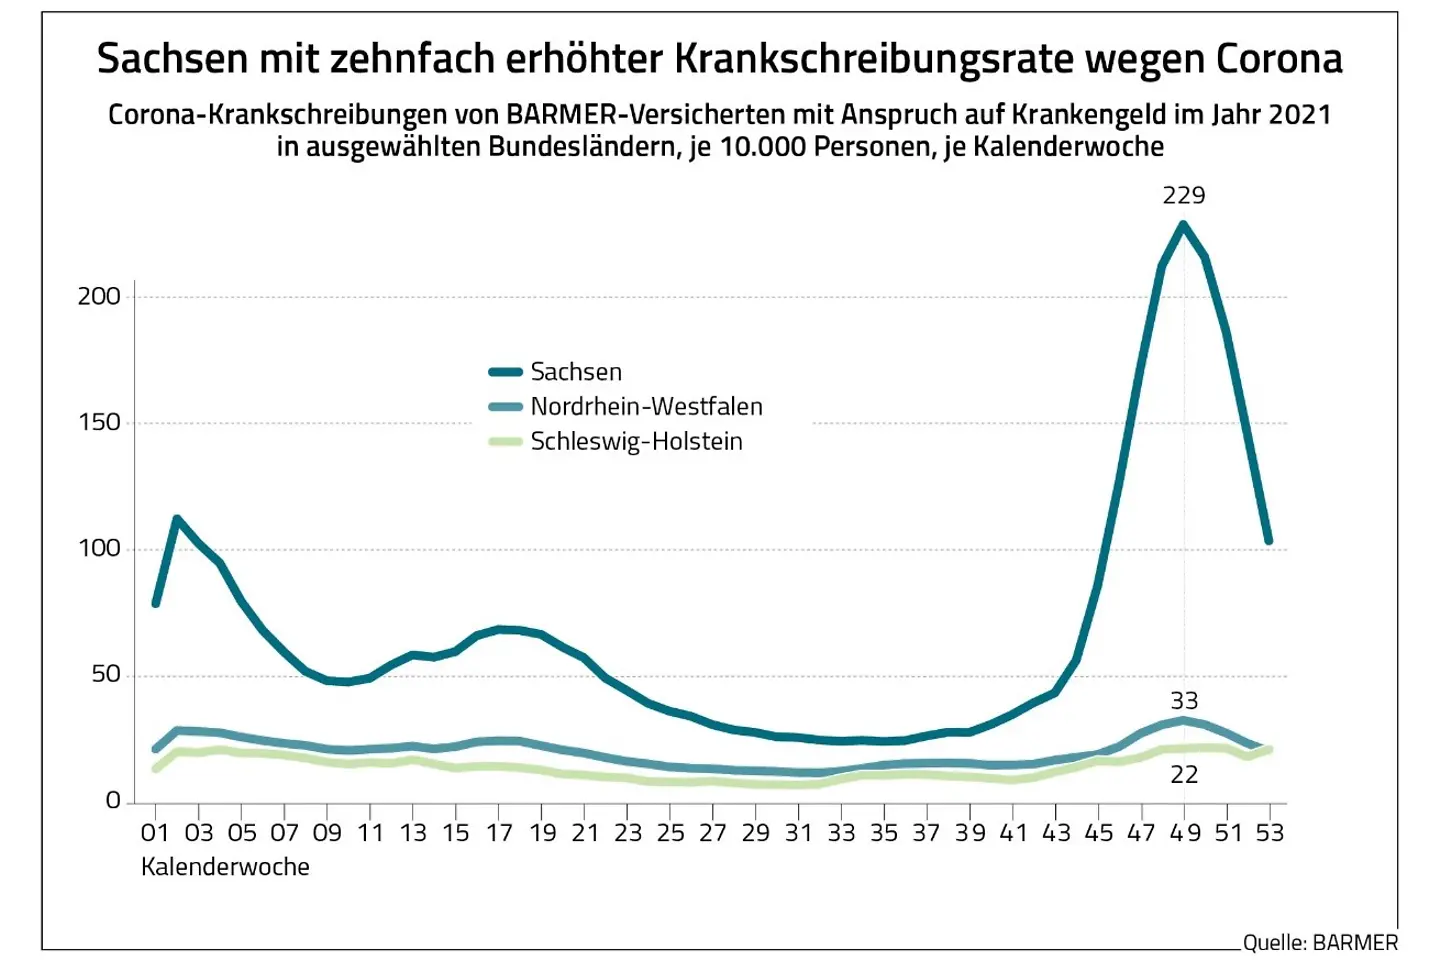 Die Grafik zeigt die Krankschreibungsraten wegen Corona im Jahr 2021 in Sachsen, Nordrhein-Westfalen und Schleswig-Holstein.